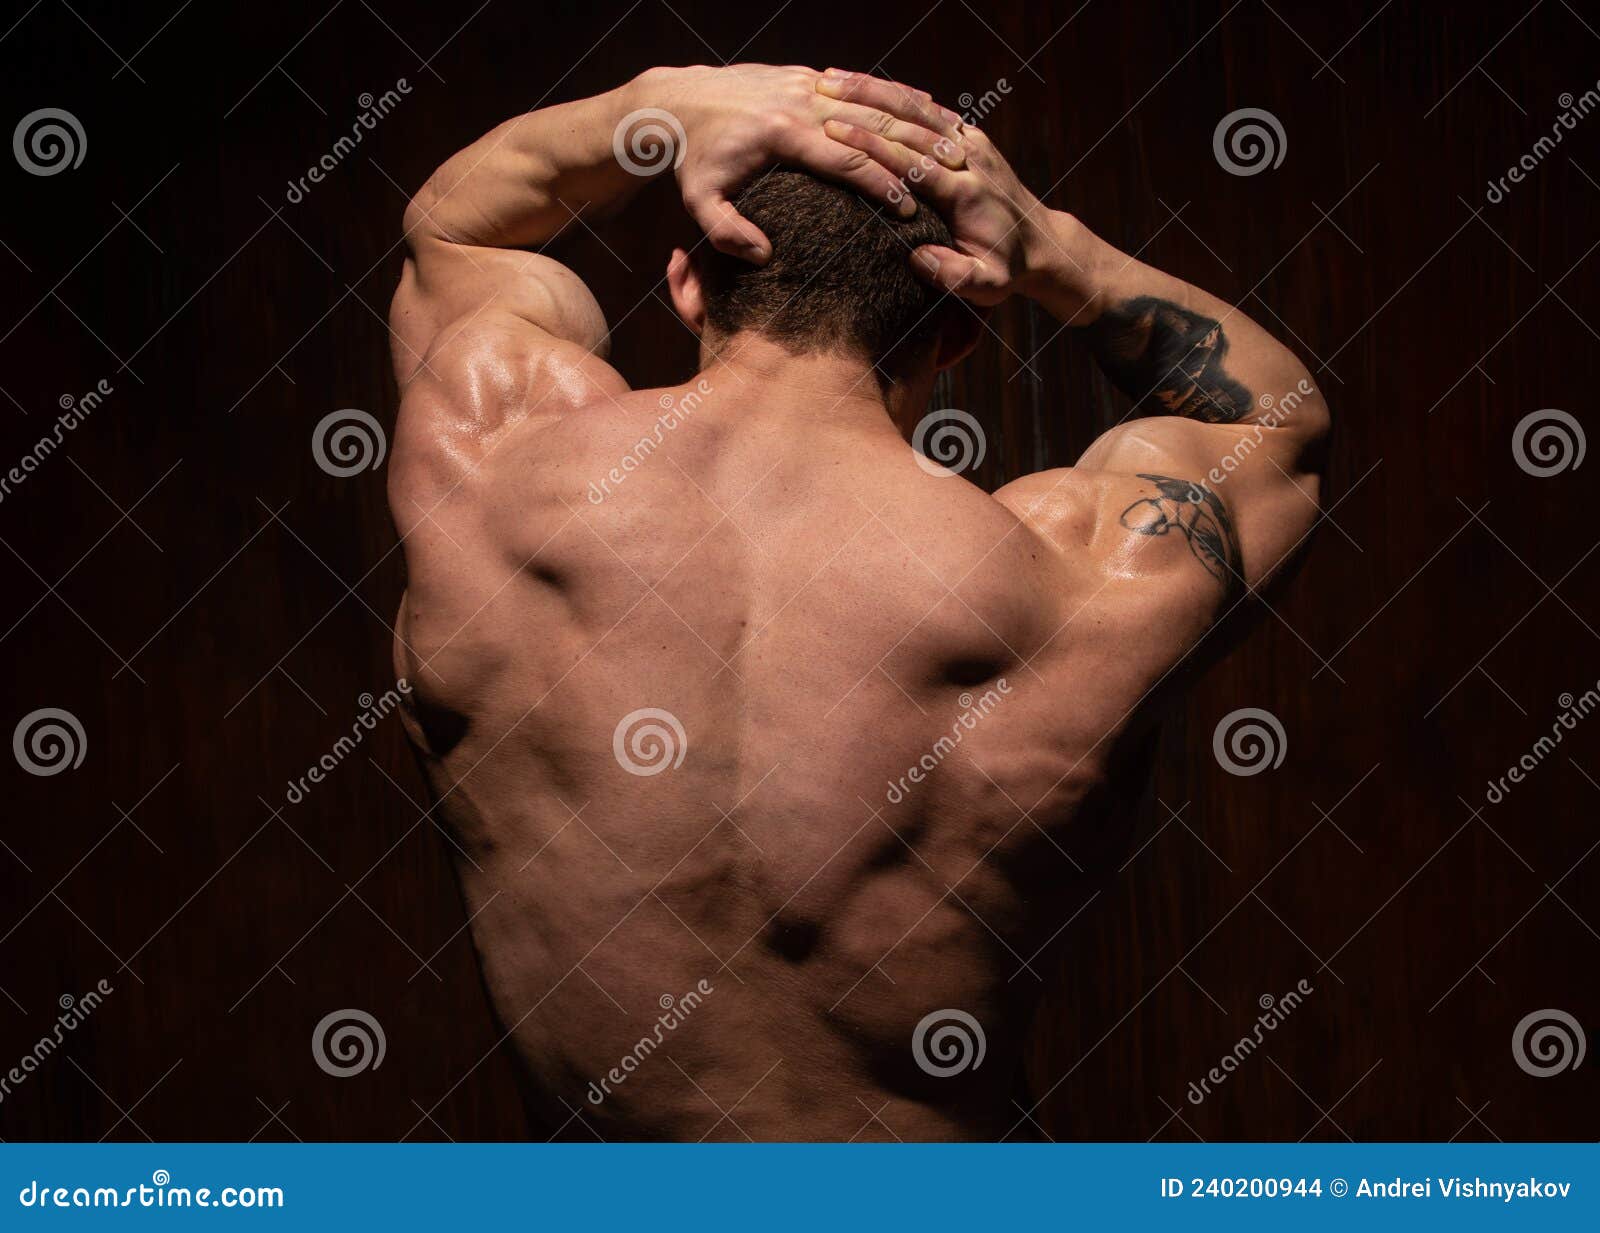 男后背 库存图片. 图片 包括有 肌肉, 定调子, 强壮男子, 男人, 阳刚之气, 健康, 严格, 力量 - 207443459